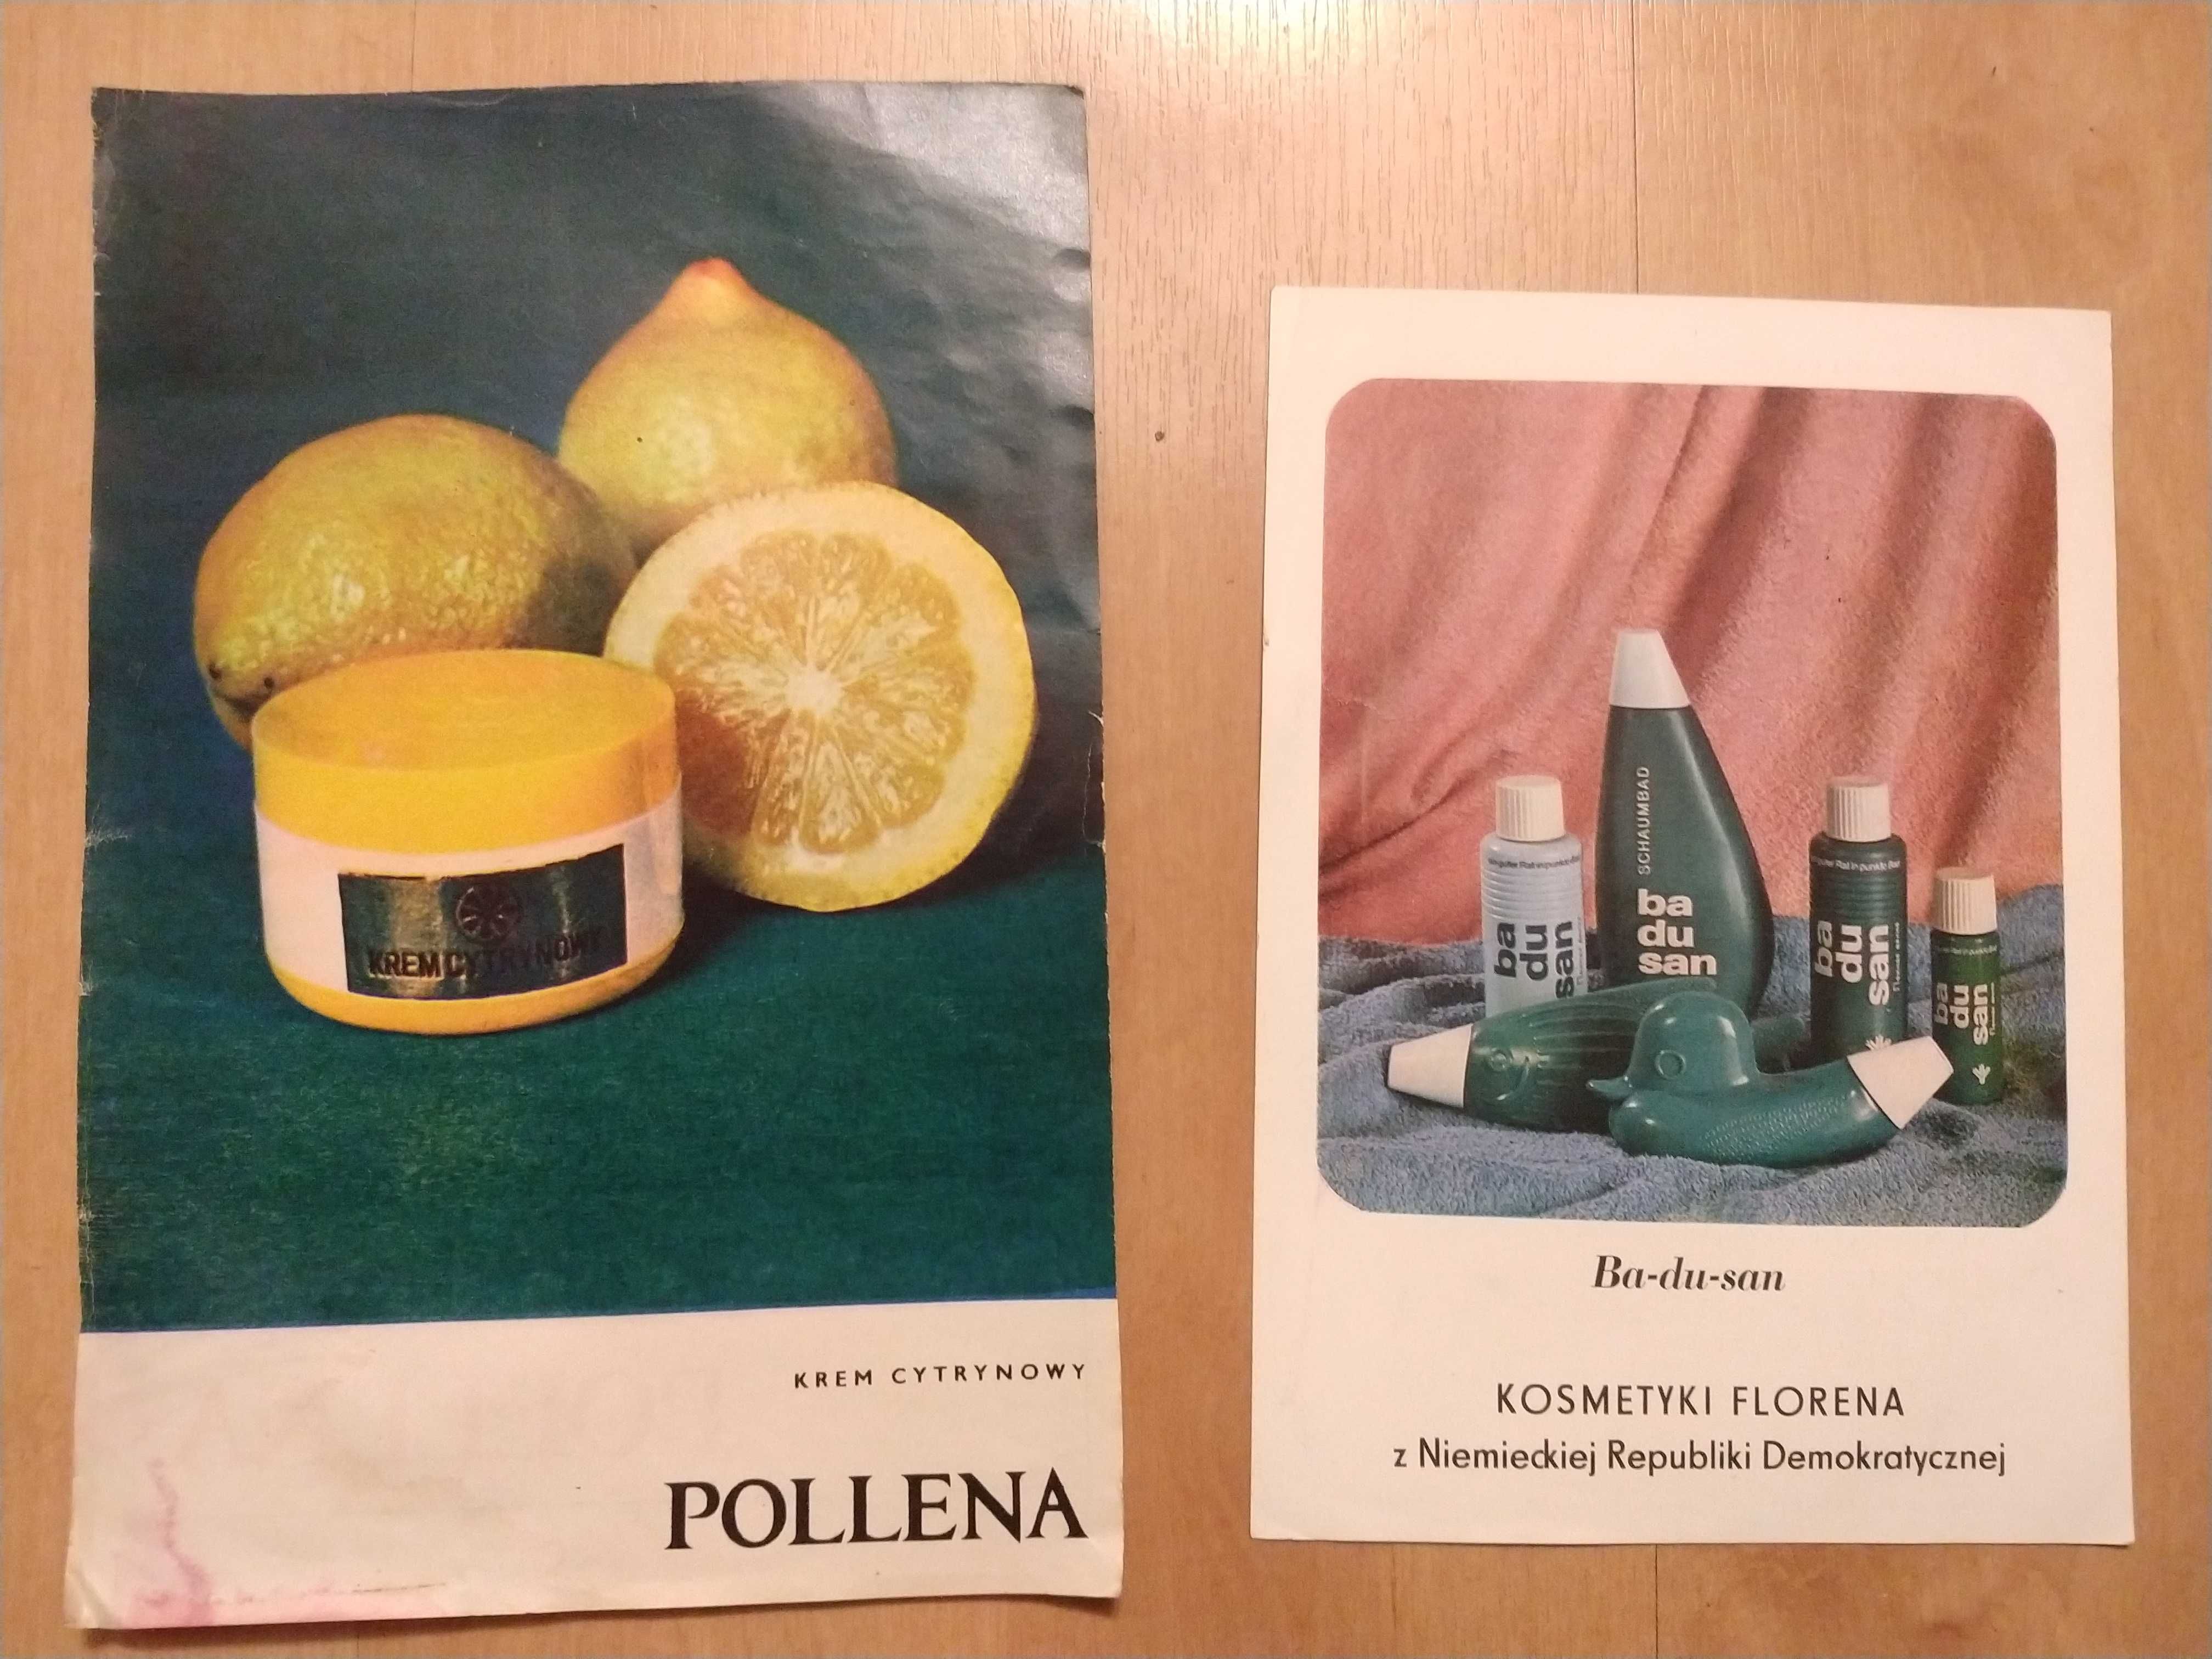 Prospekt reklamowy kosmetyków Pollena i Florena z NRD